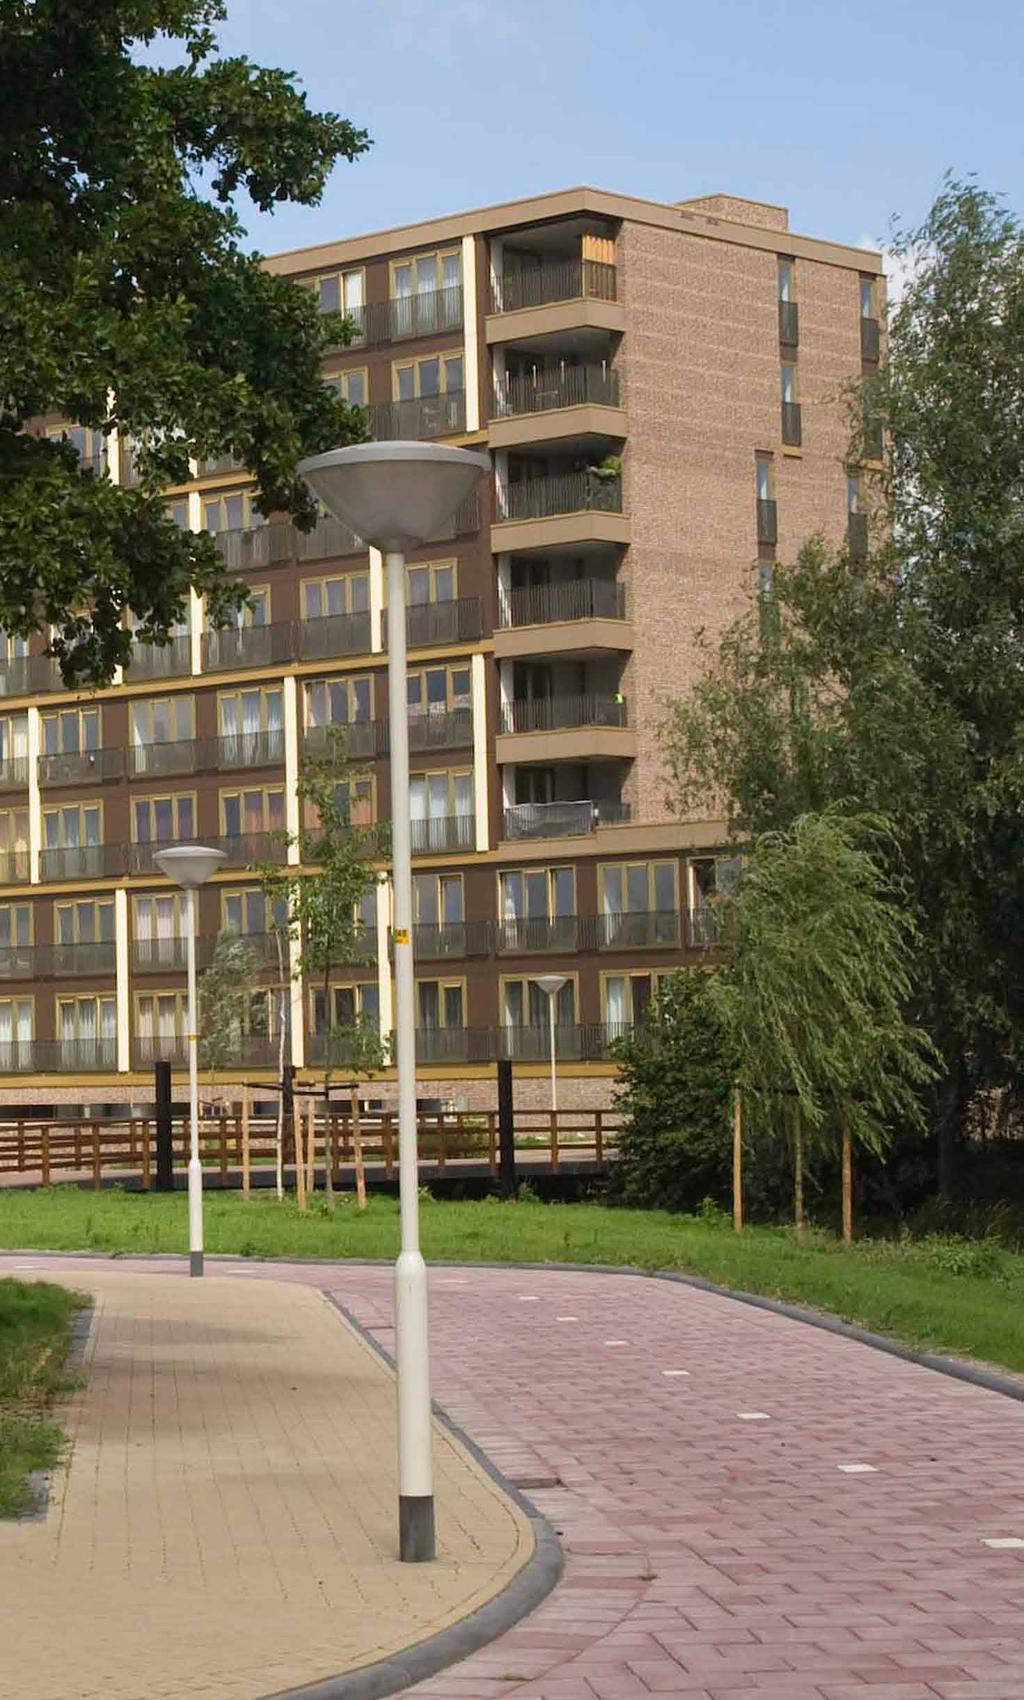 WIJKVISIE In de afgelopen jaren is veel geïnvesteerd in sociale wijkprojecten, de renovatie van de Vestia flats en de openbare ruimte eromheen.